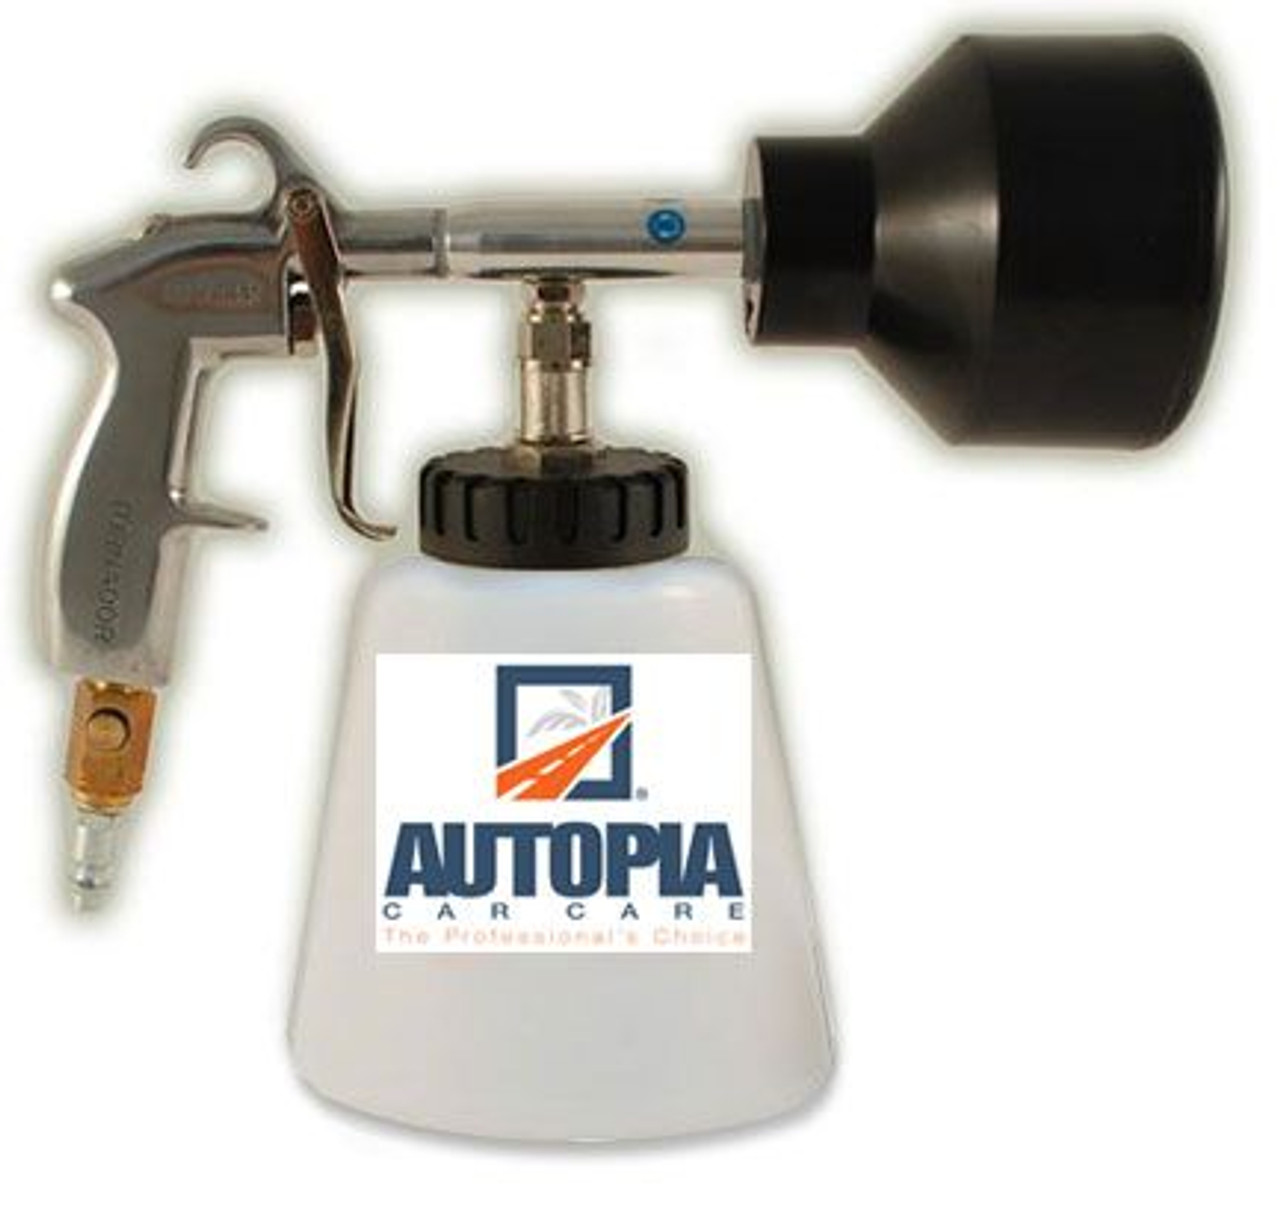 Autopia Tornador Car Cleaning Gun